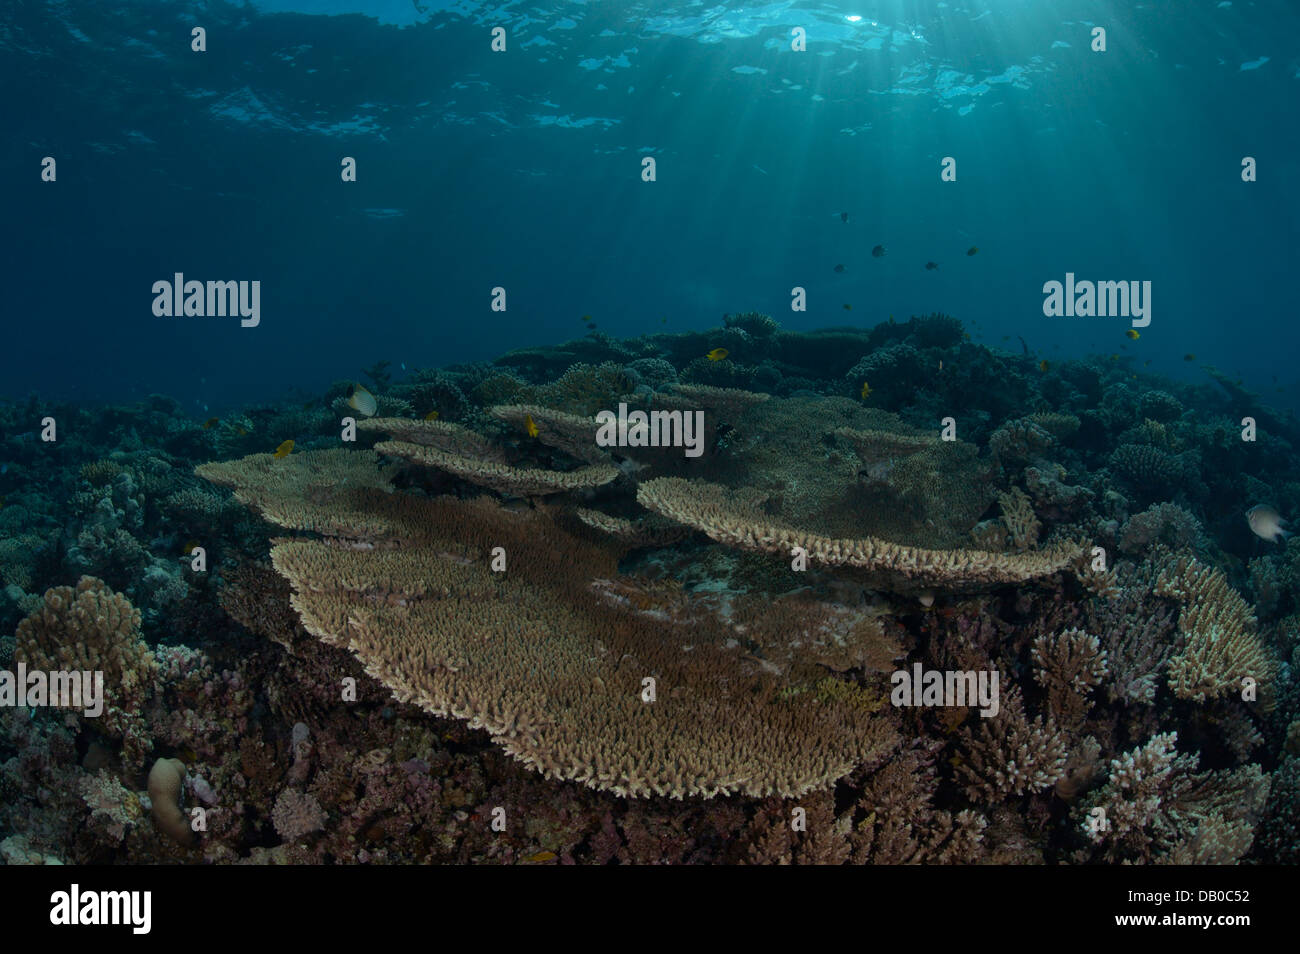 Acropora Korallen erstellen Sie wunderschöne Felsformationen in Gewässern des Roten Meeres. Tausende von kleinen Fischen verbringen es großen Teil ihres Lebens. Stockfoto